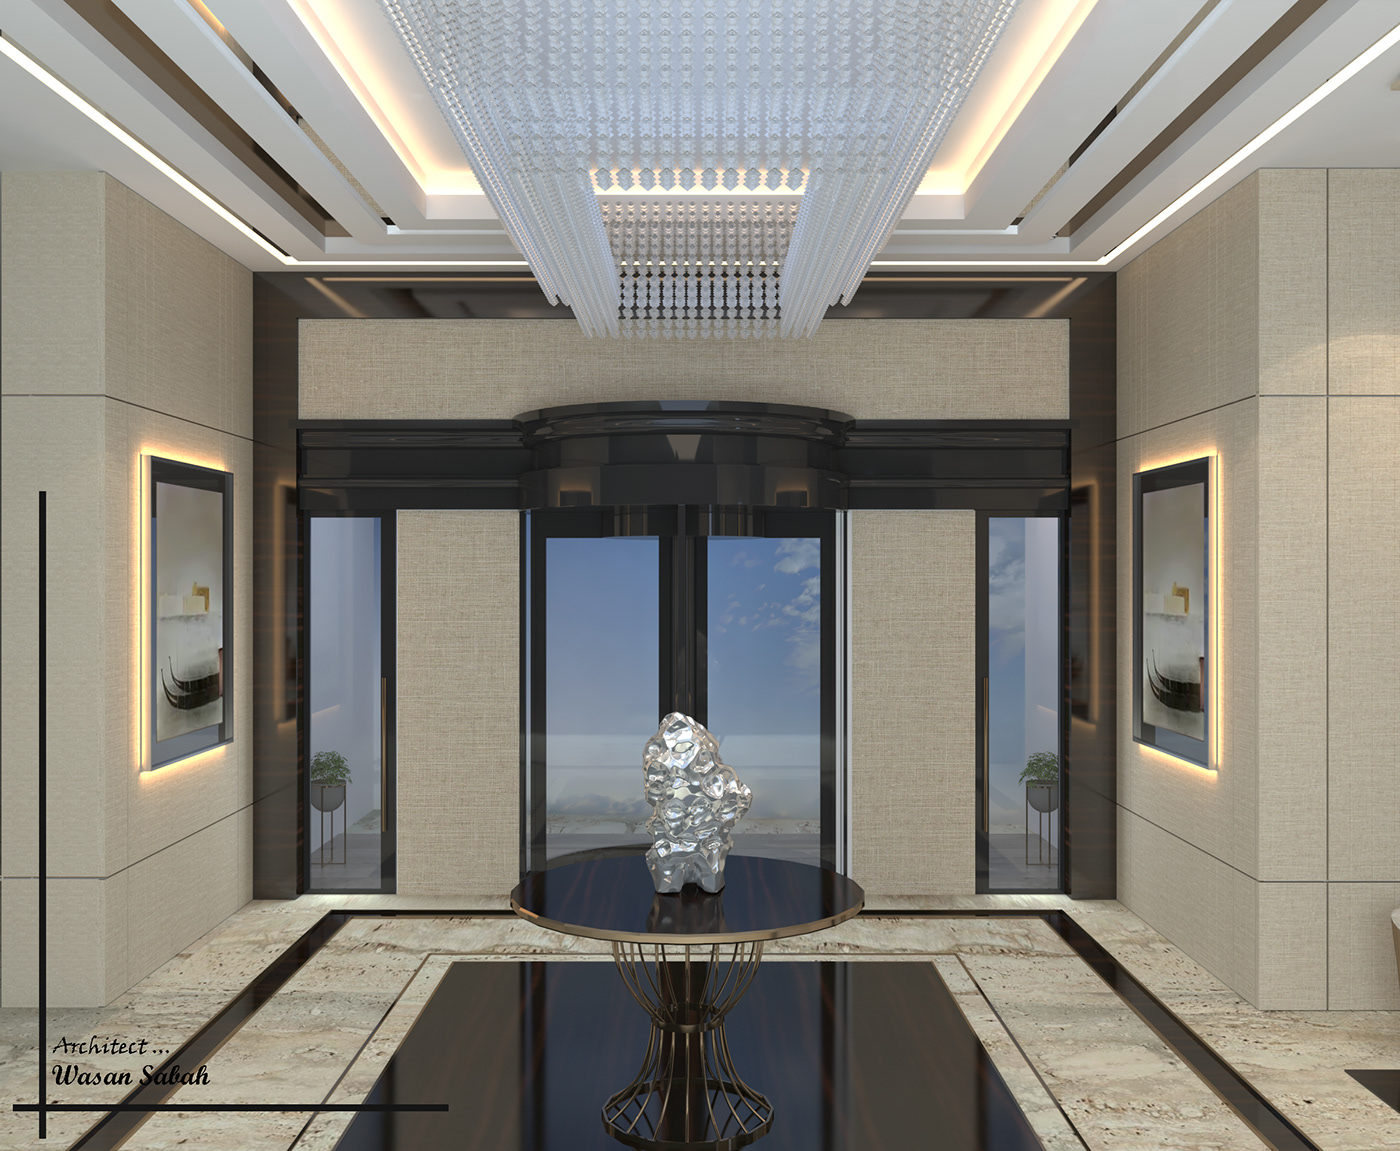 3D 3ds max architecture corona exterior Interior interior design  Render visualization vray